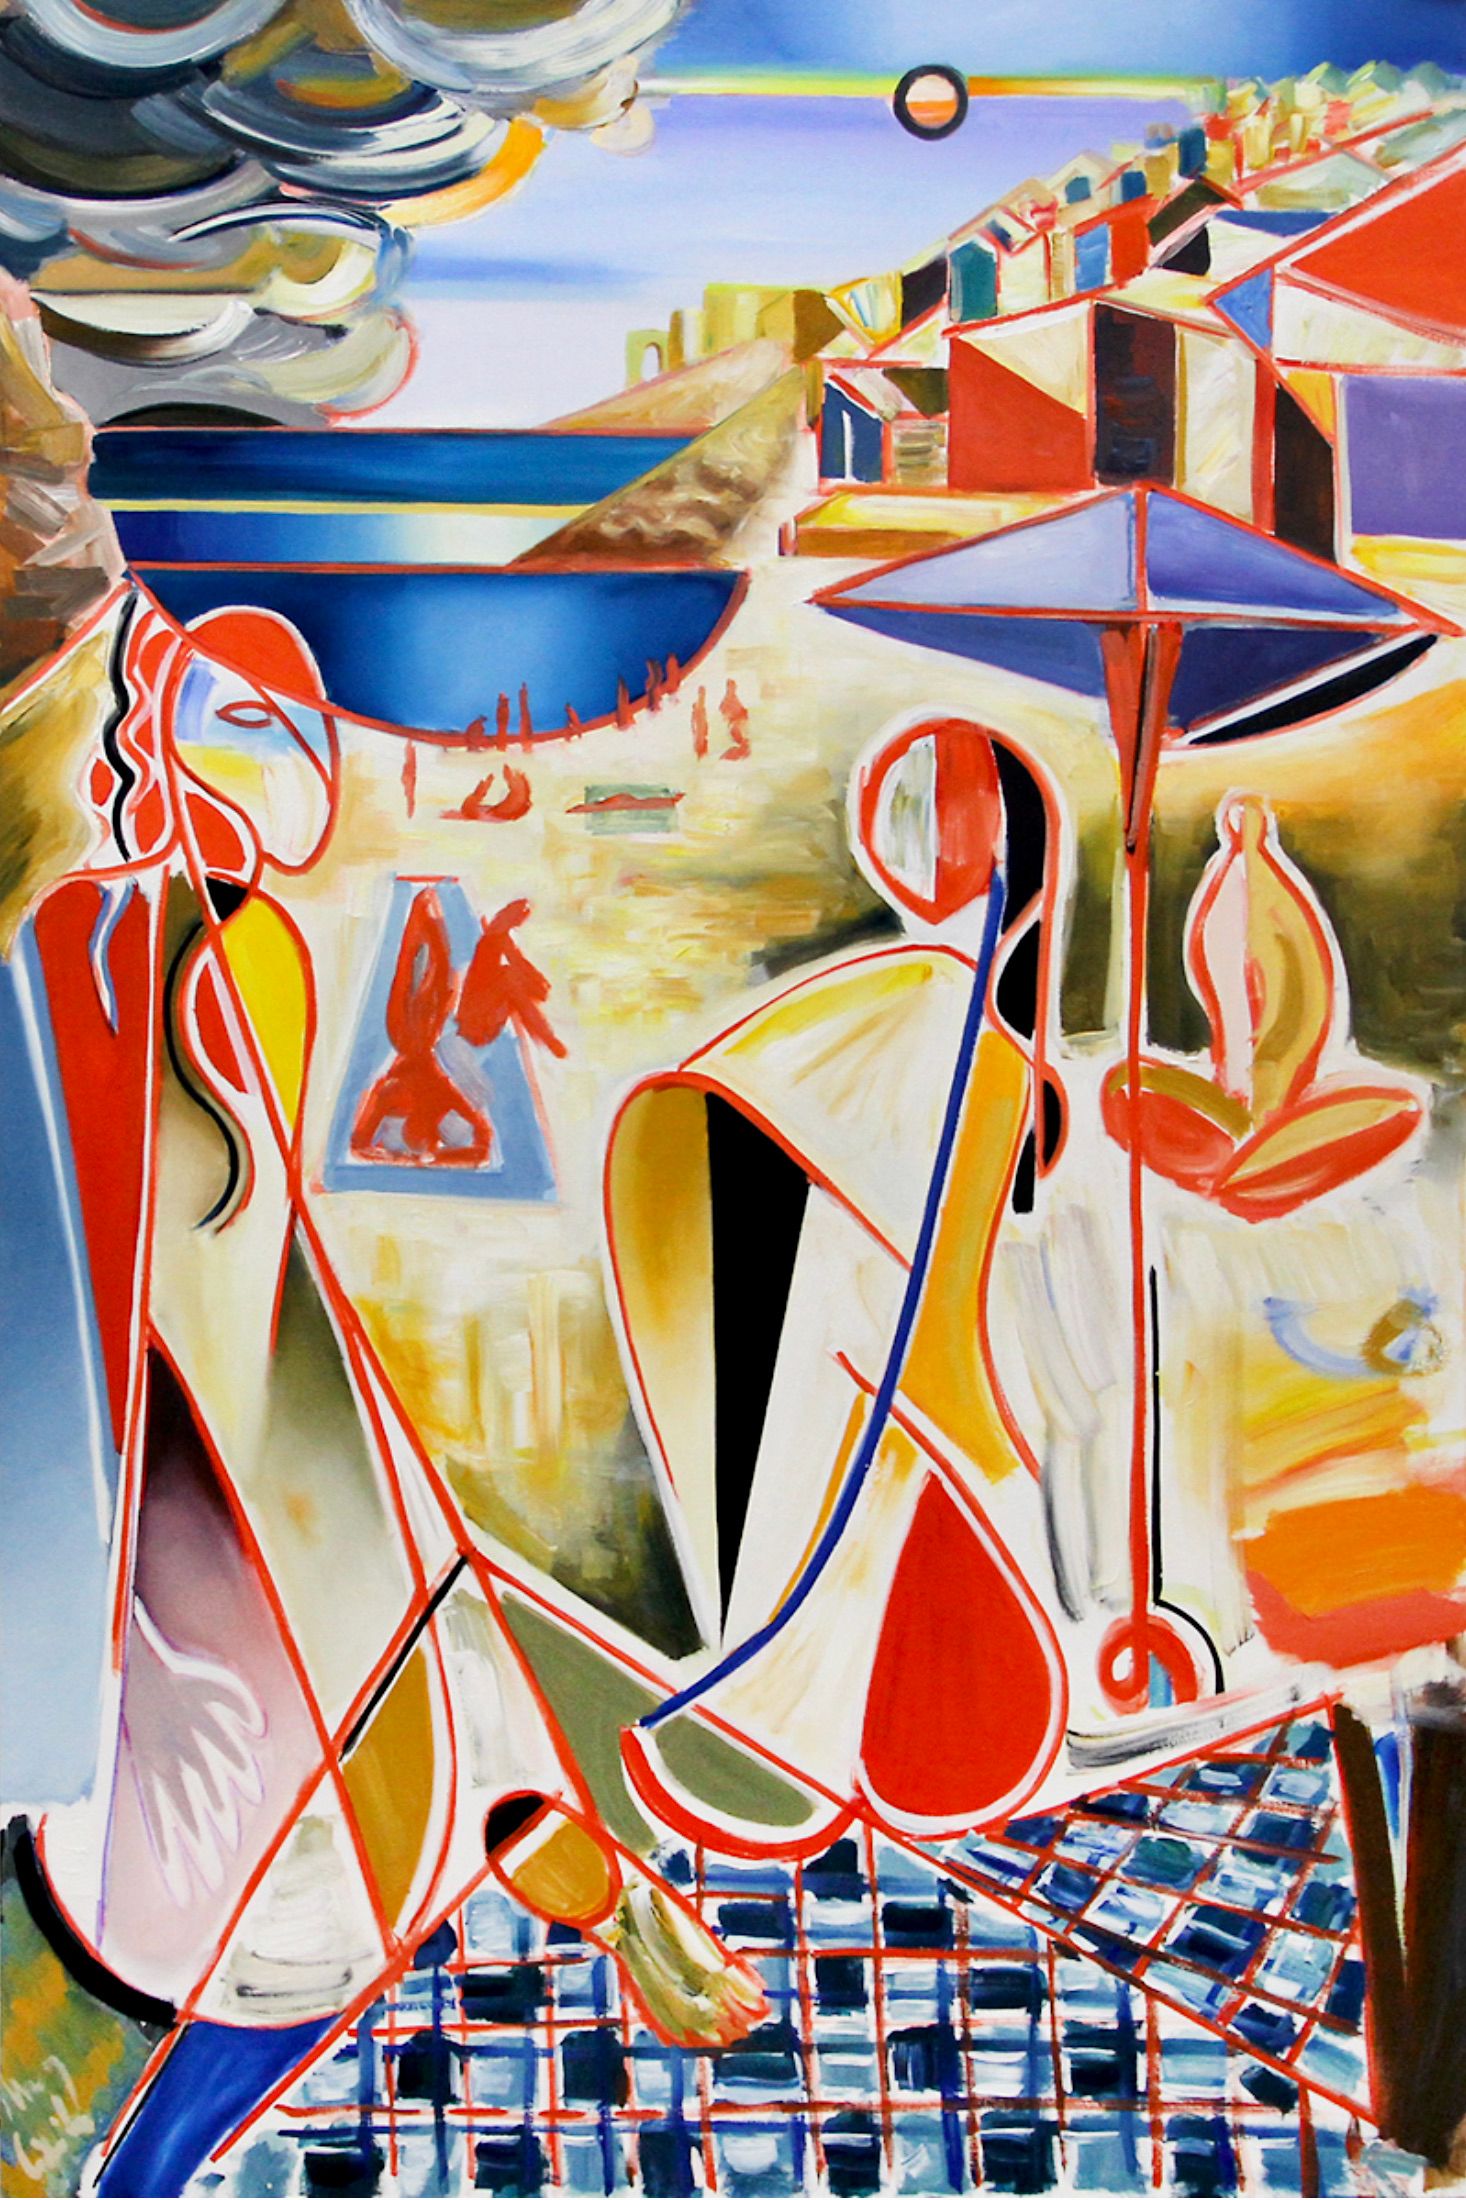 MECESLA Maciej Cieśla, "La costa, formas abstractas, Italia", Pintura abstracta de colores sobre lienzo